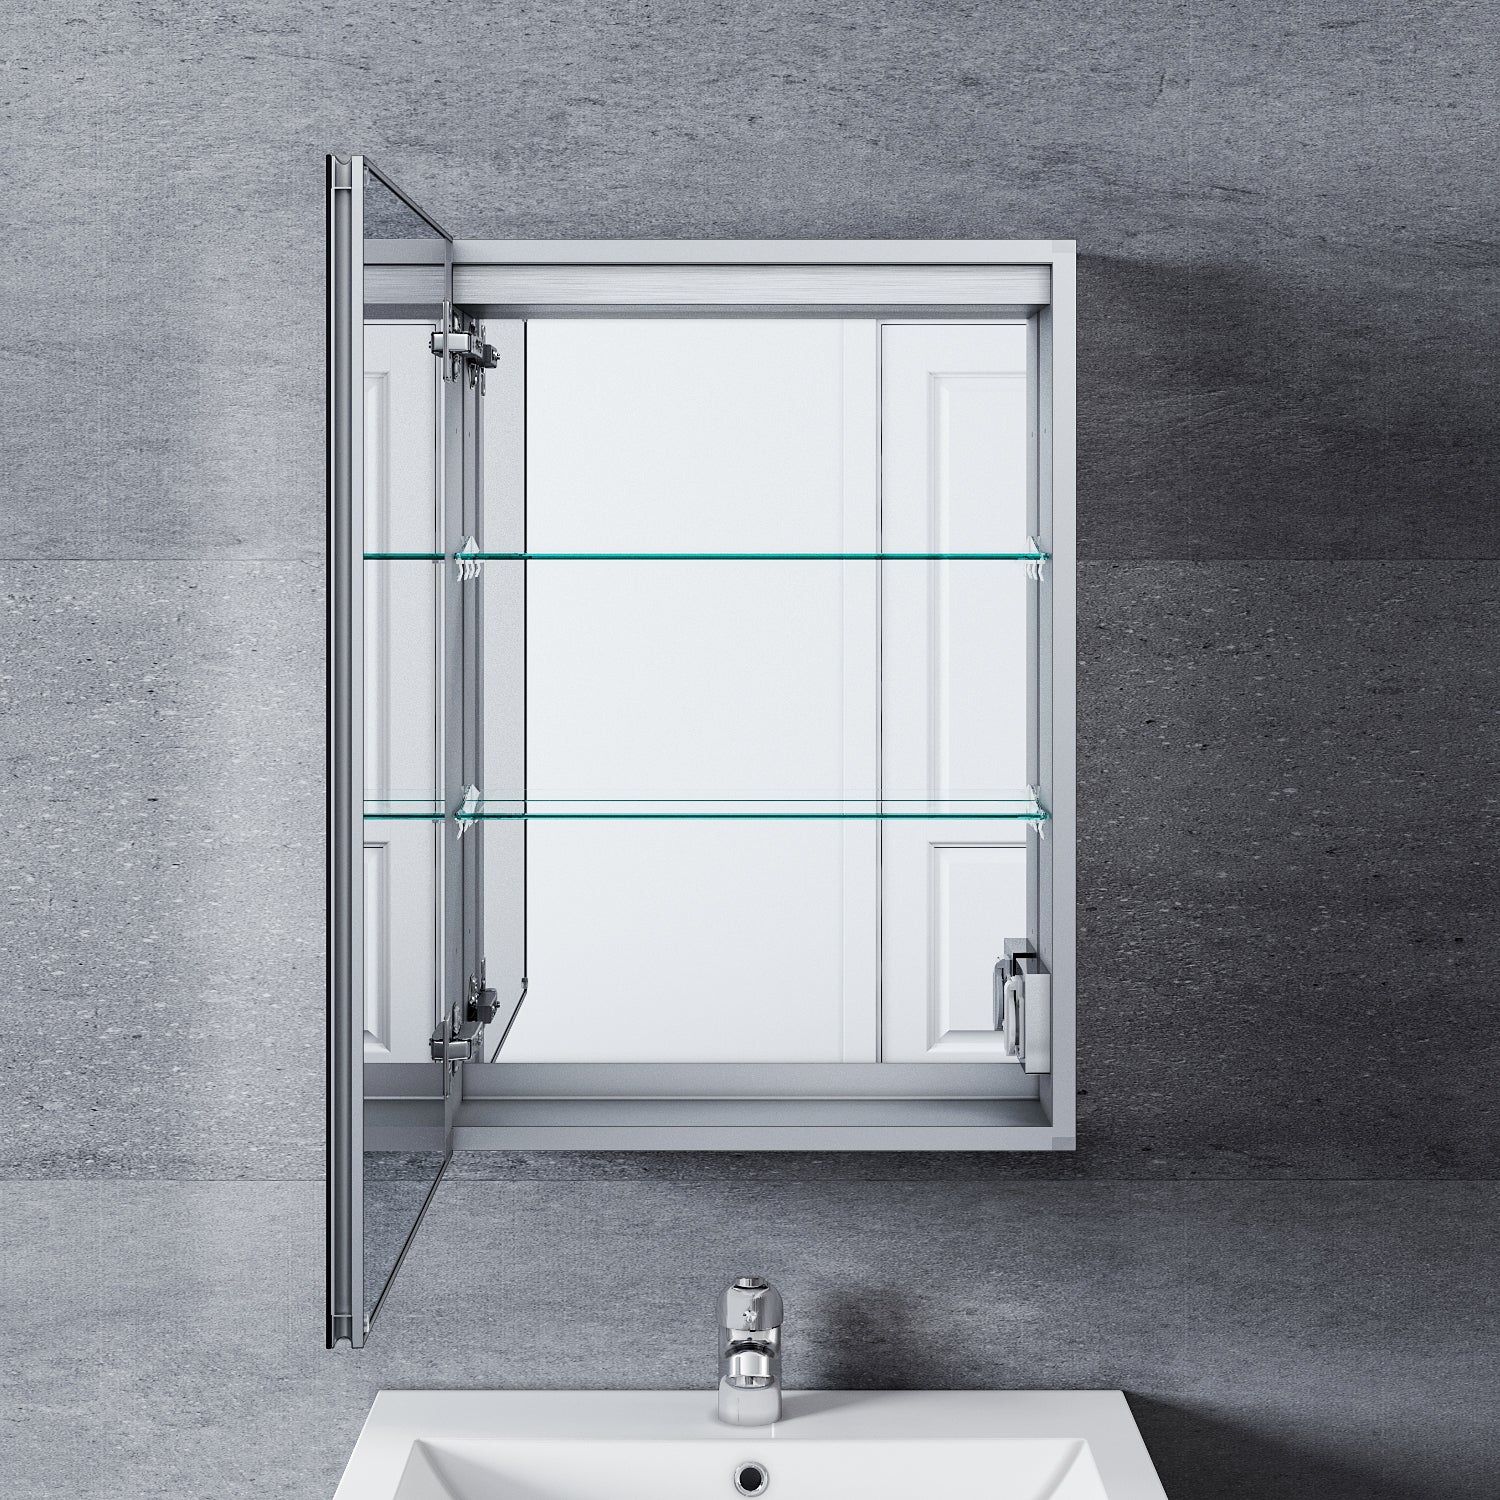 SONNI LED Spiegelschrank mit Beleuchtung für das Badezimmer Aluminium Spiegelschrank mit Beleuchtung Spiegelschrank mit Steckdose wasserdicht beschlagfrei